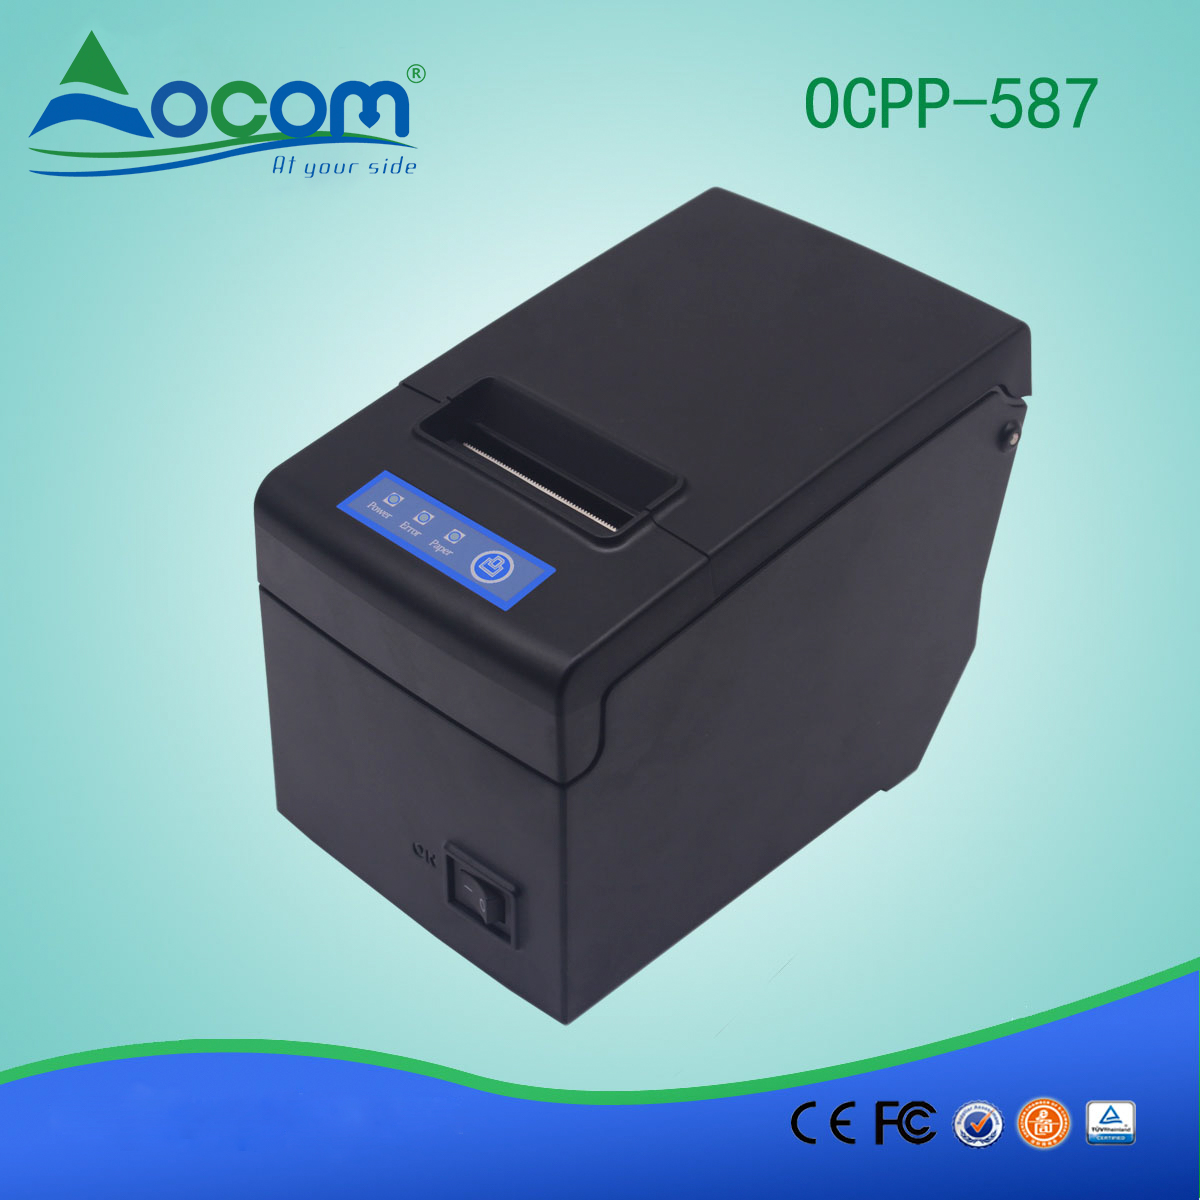 58-mm thermische bonprinter met grote papierhouder OCPP-587-L LAN / Ethernet-poort